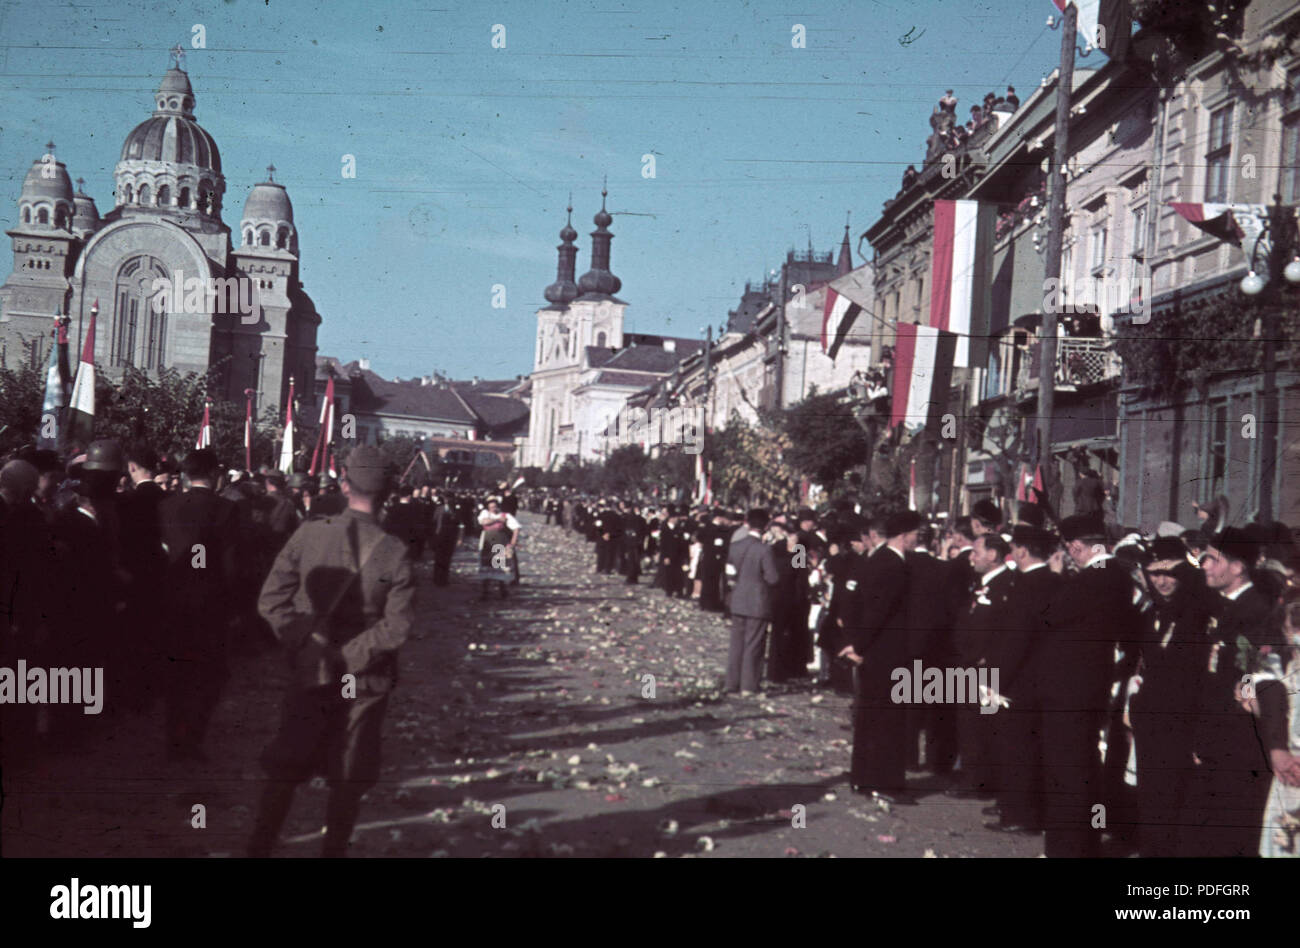 136 Fő tér (Piata Trandafirilor), balra az Ortodox Székesegyház, jobbra a Keresztelő Szent János-templom a magyar csapatok bevonulása idején. A felvétel 1940. szeptember 10-én készült. Fortepan 92497 Stock Photo